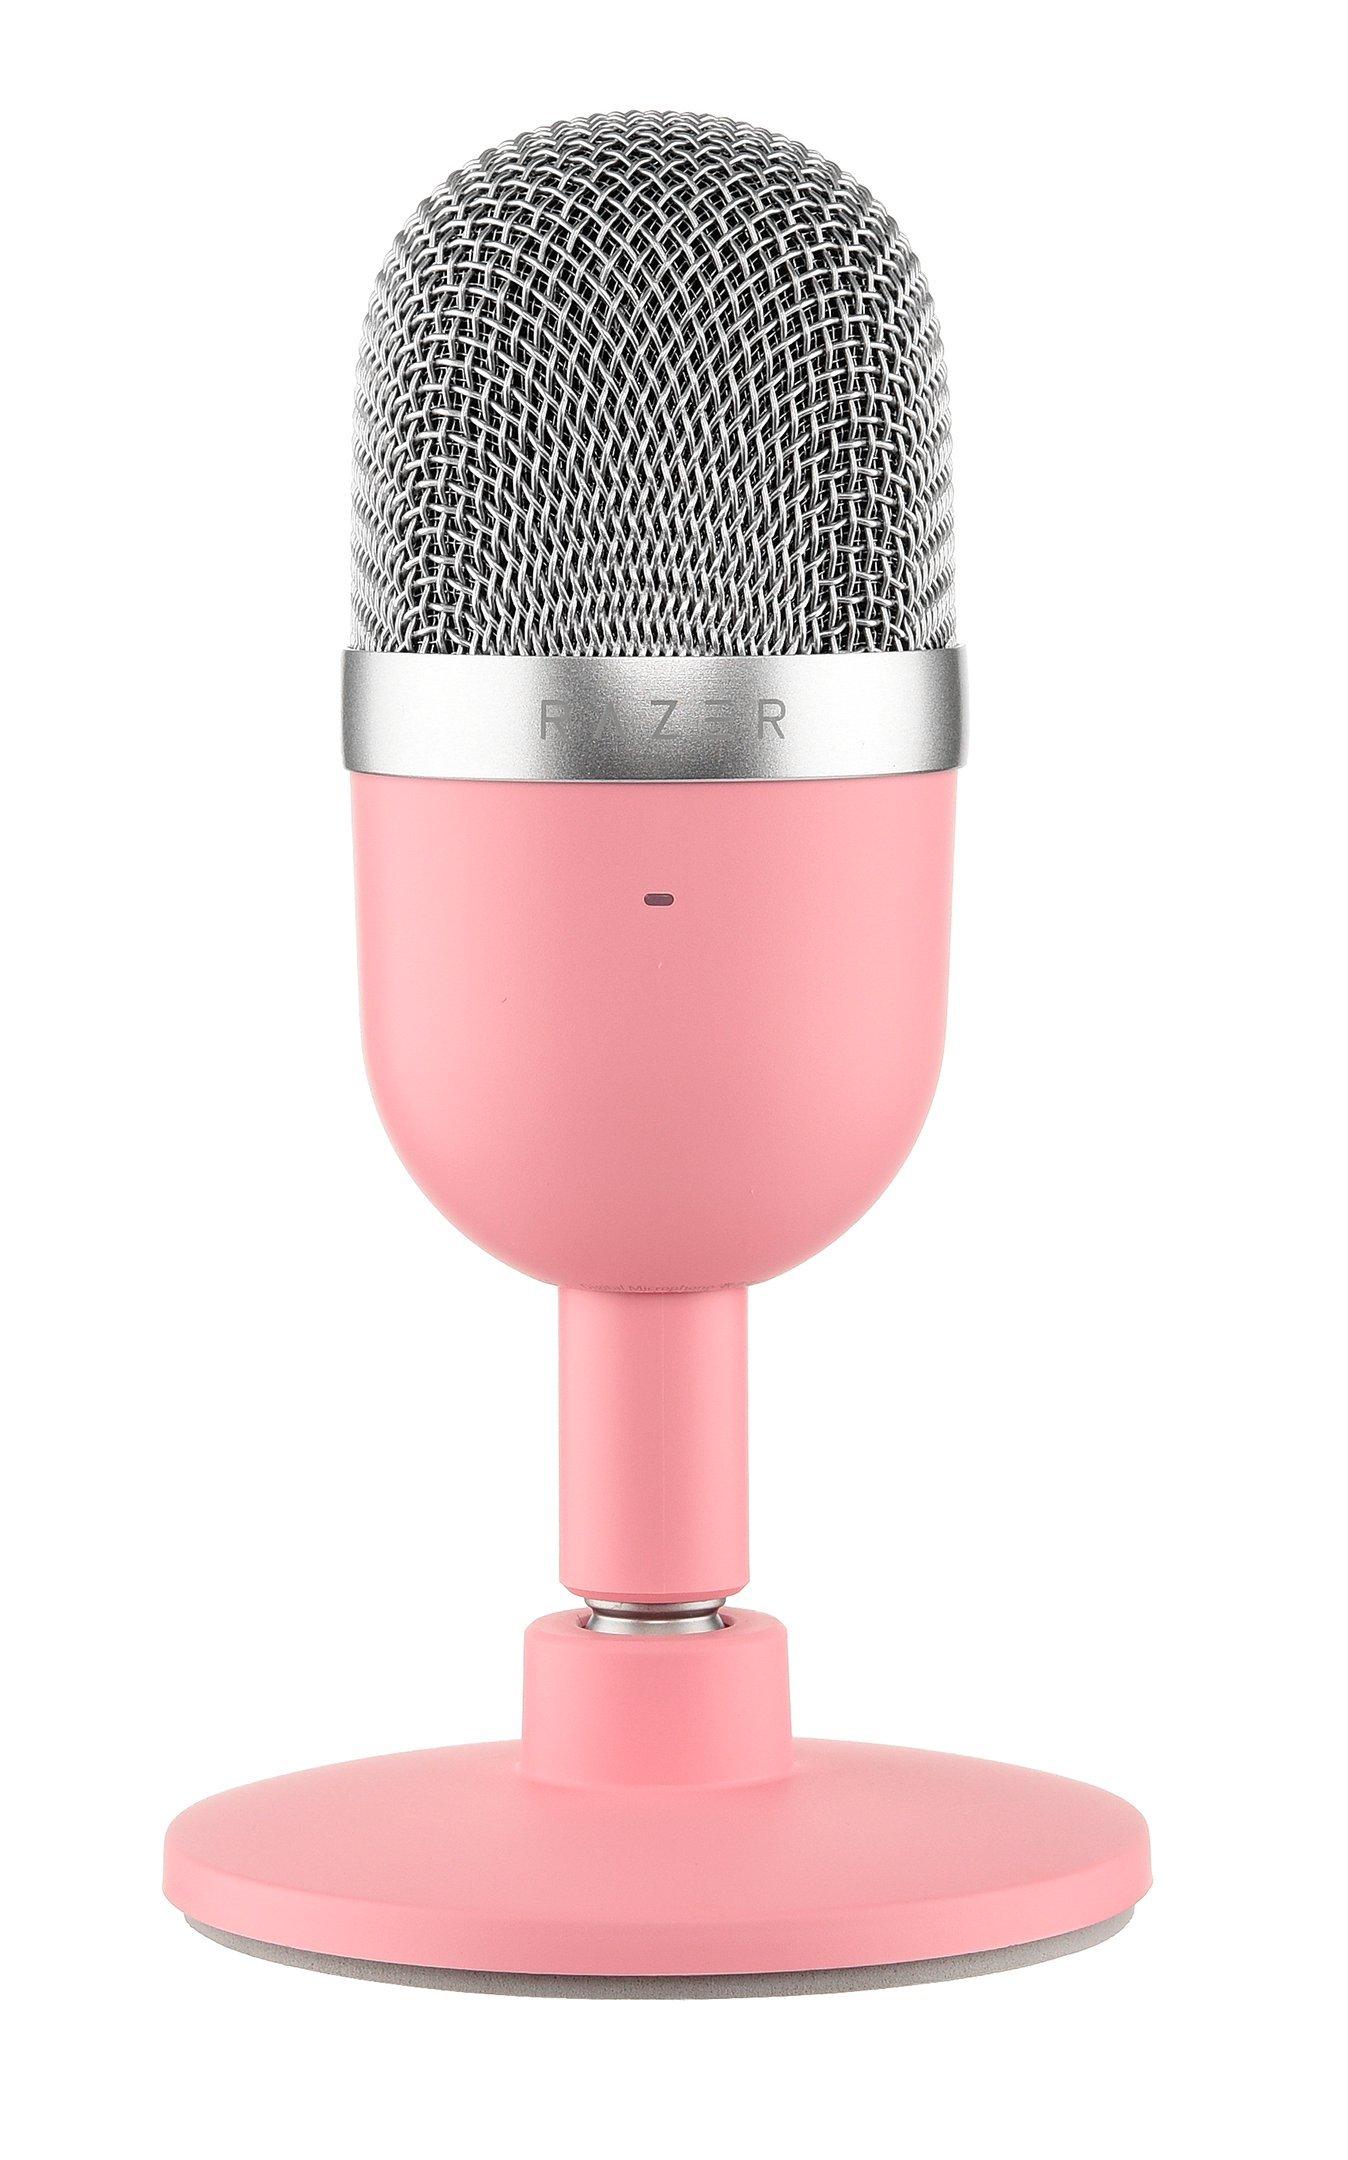 Micrófono RAZER SEIREN mini ultra compact condenser rosado - Viva